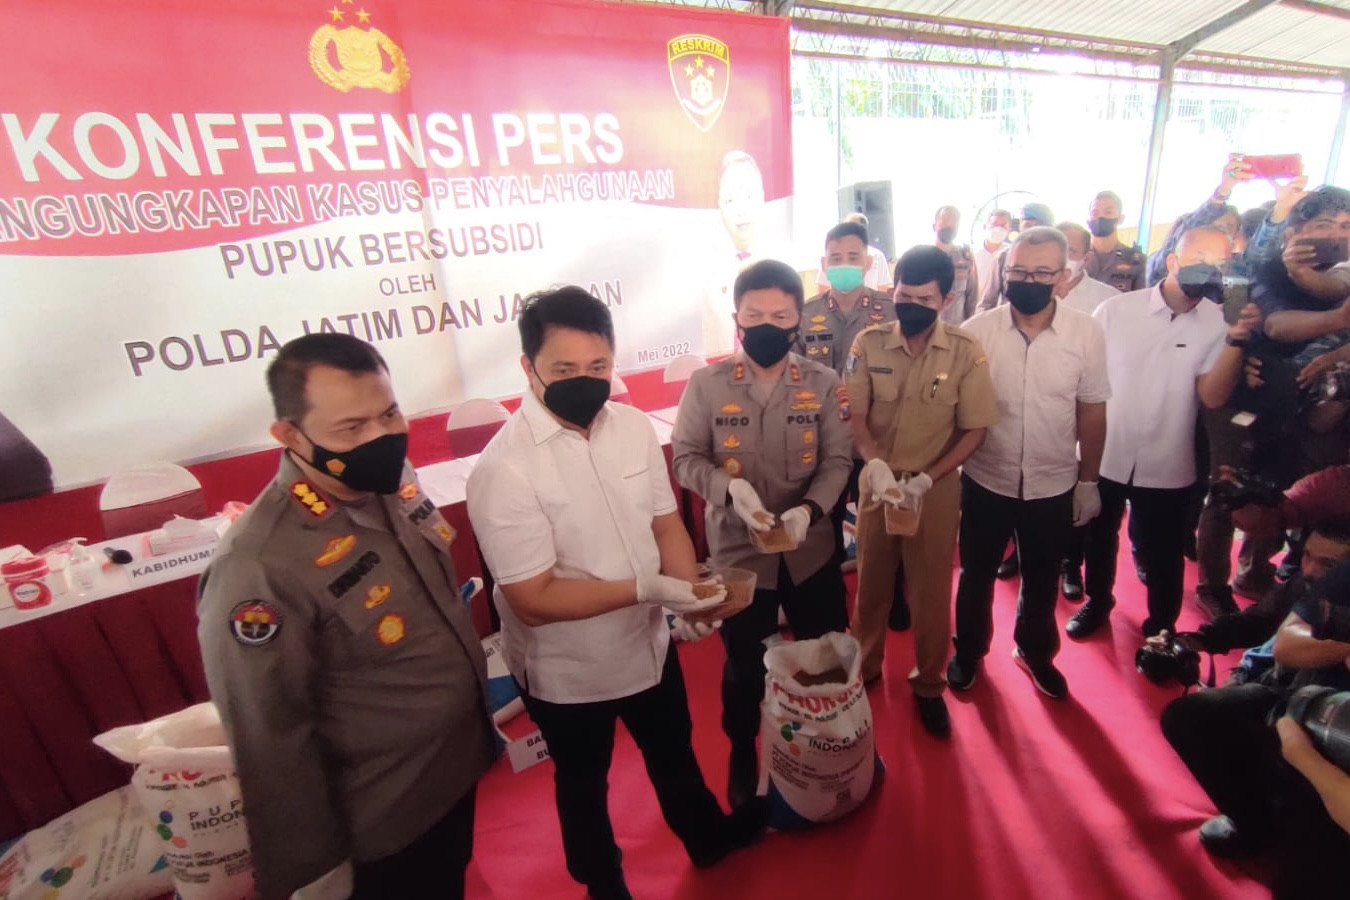 Polda Jatim Ungkap Penjualan Pupuk Ilegal dari 9 Daerah, Barang Buktinya Bejibun - JPNN.com Jatim